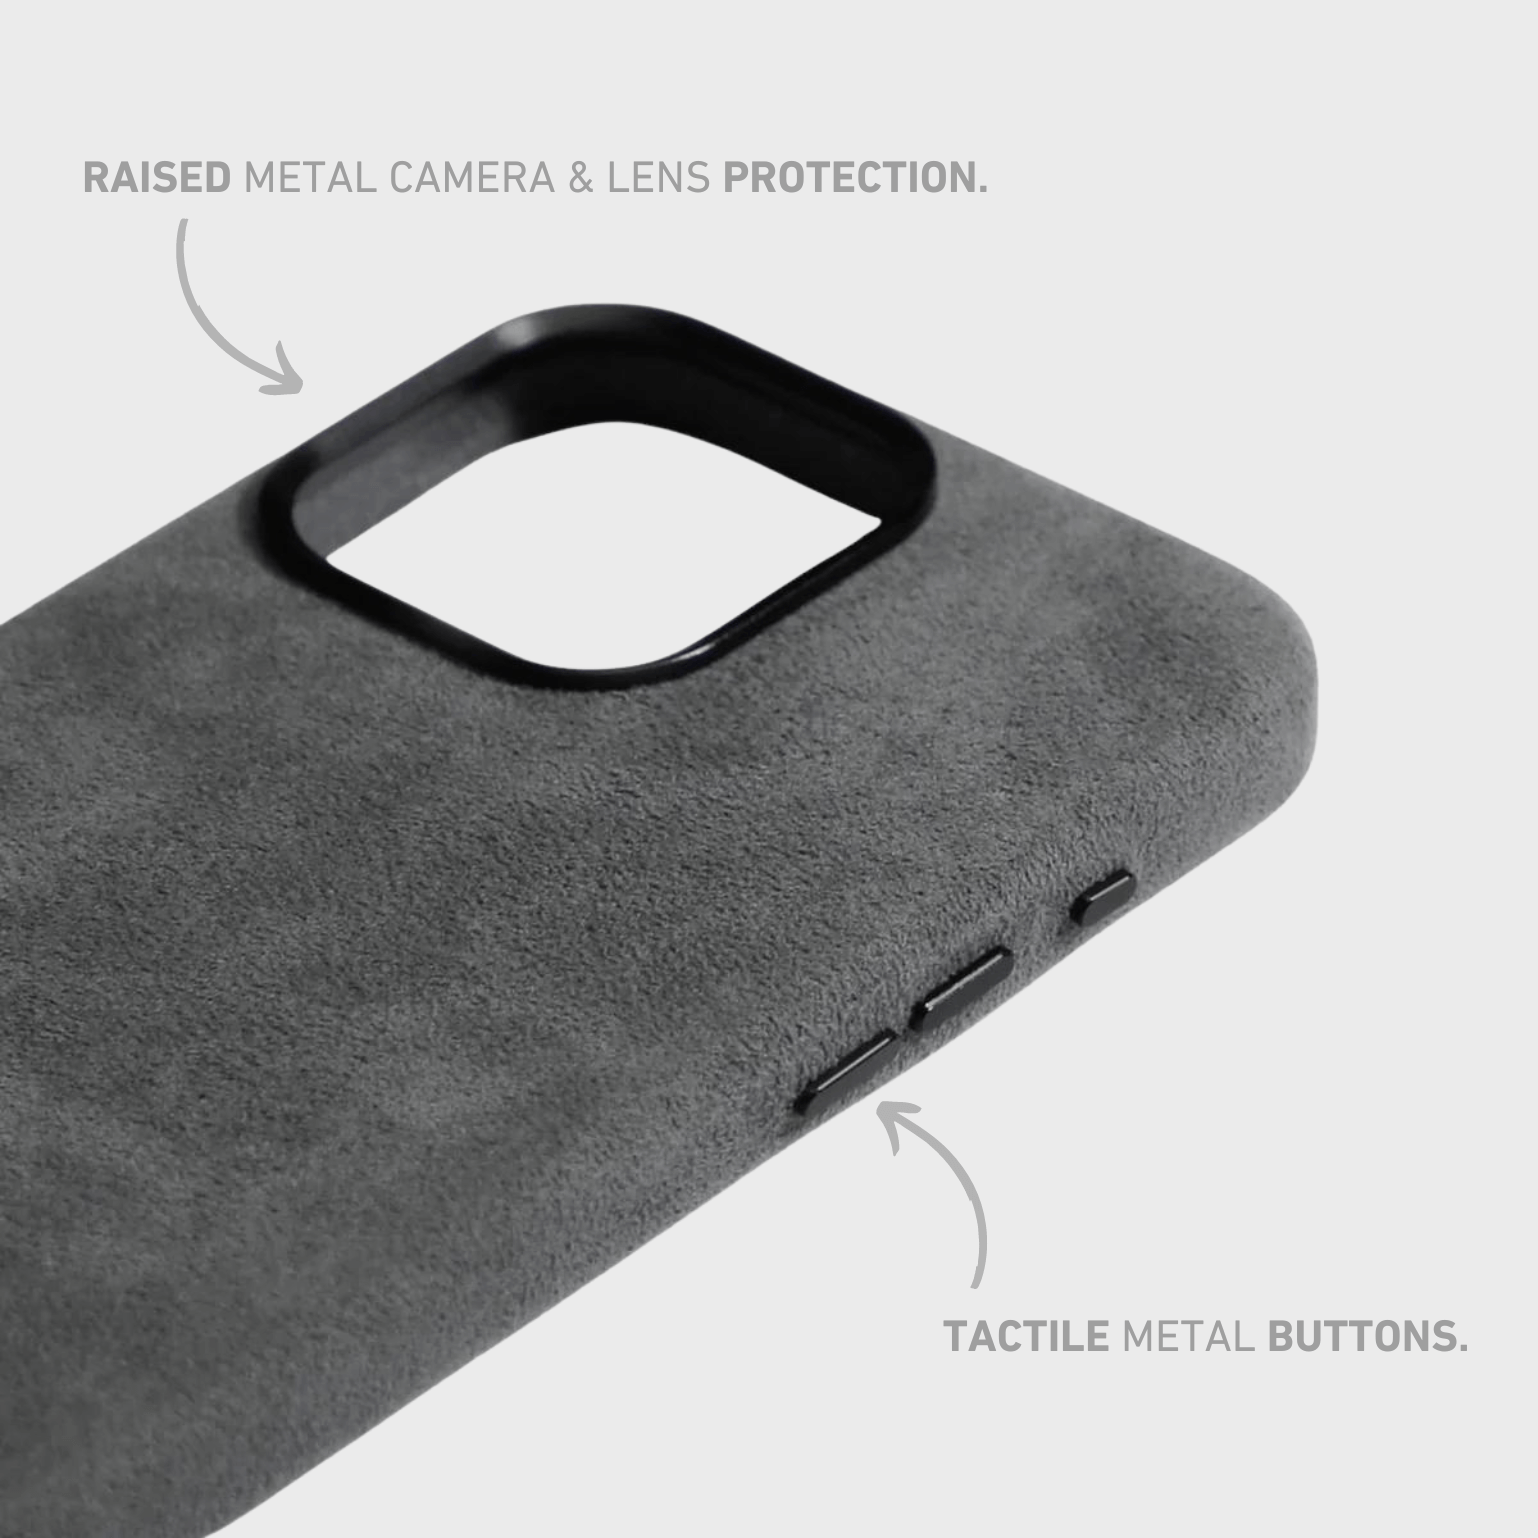 Alcantara iPhone Case + MagSafe Wallet - Space Gray Edition